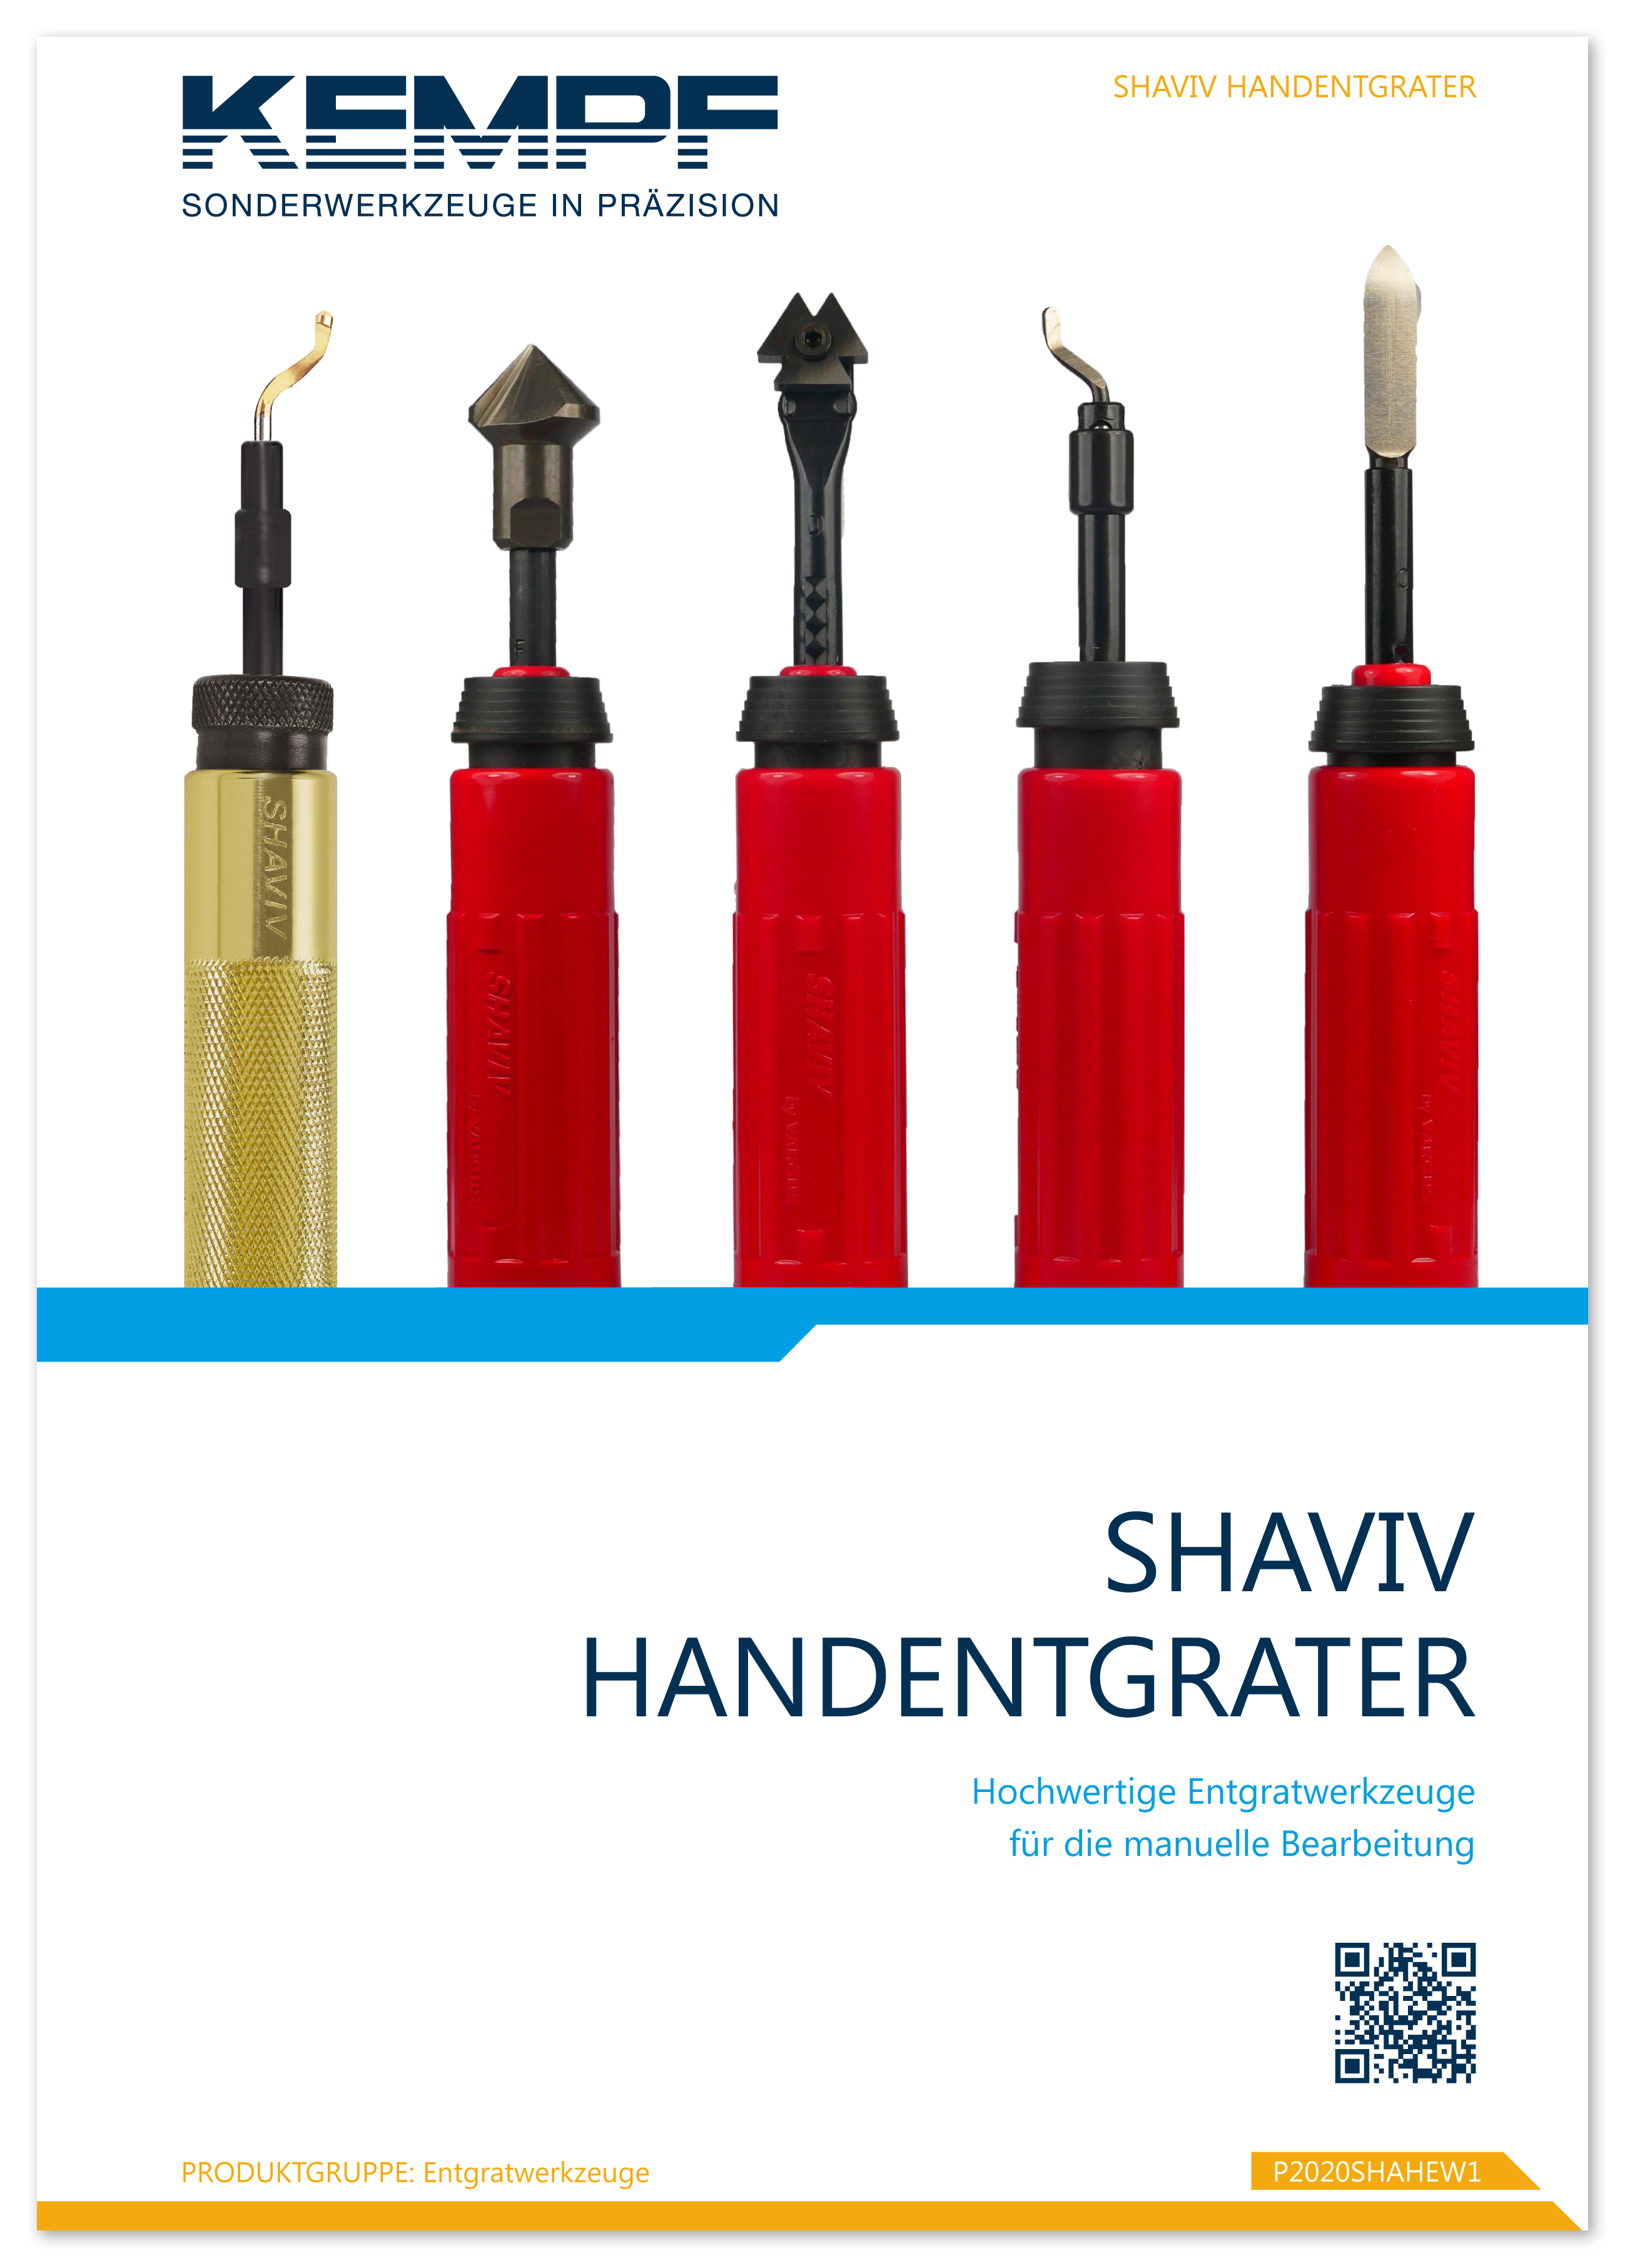 ENTGRATEN-Shaviv-Handentgrater-2019